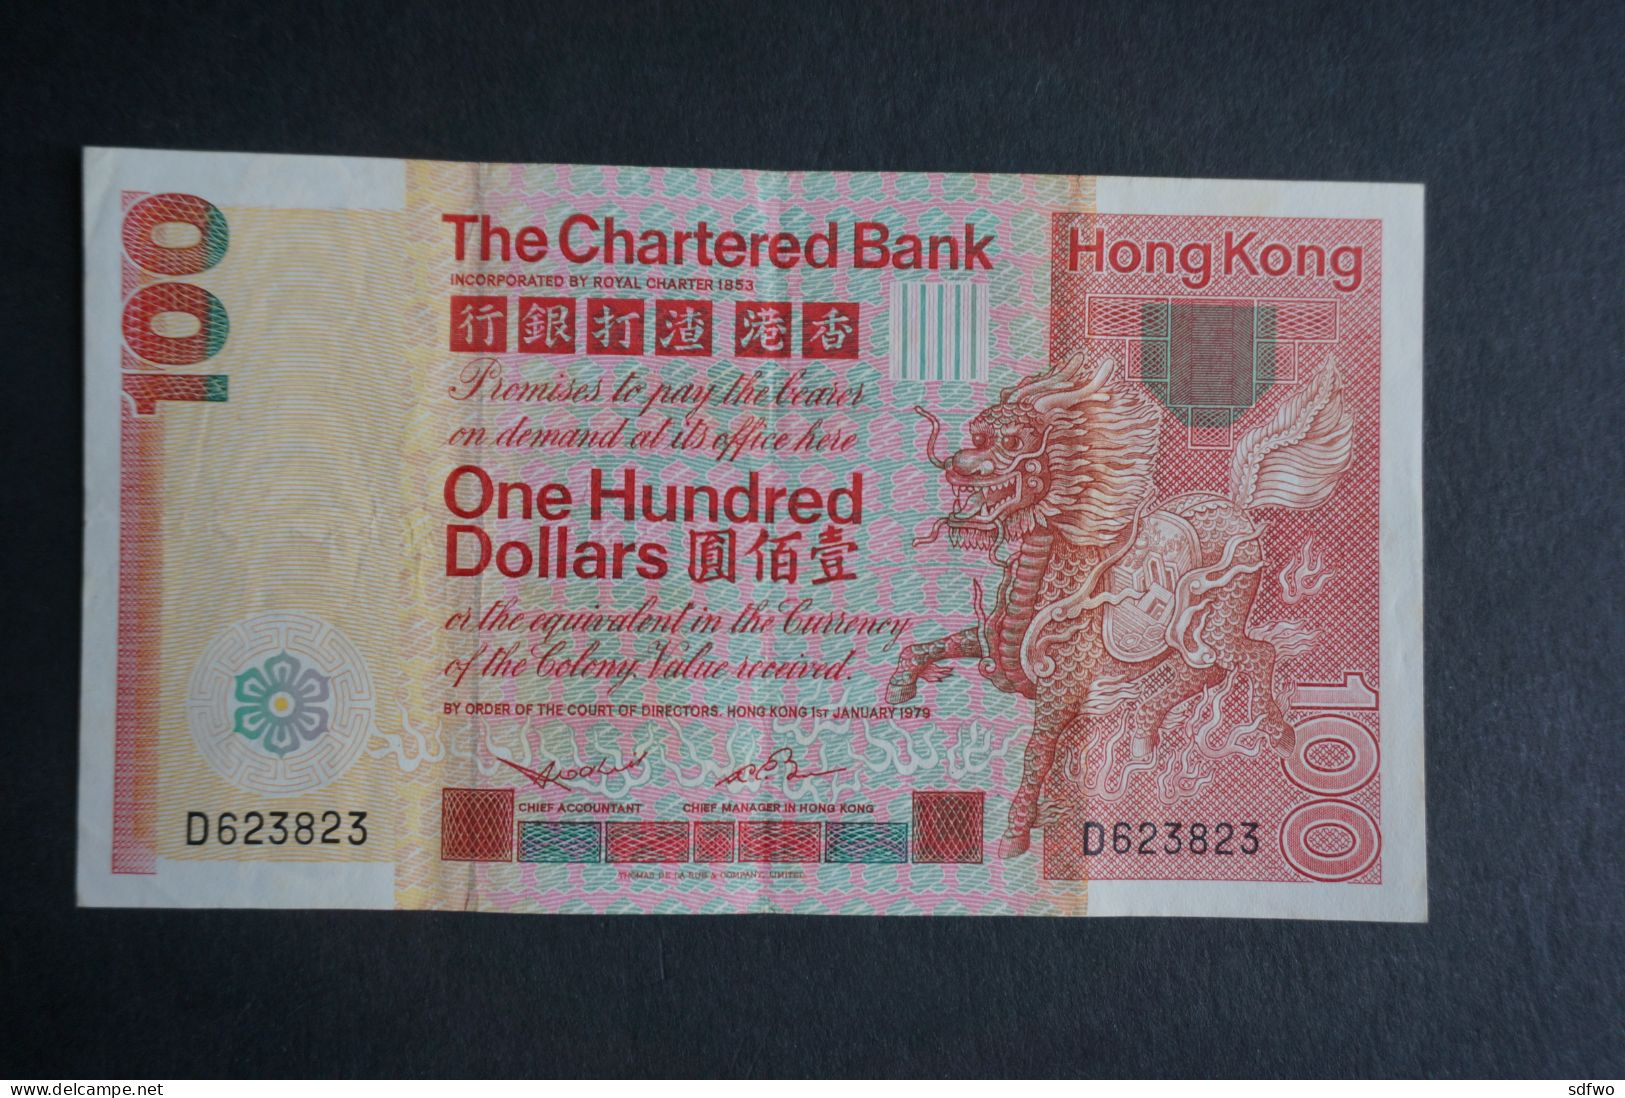 (M) 1979 HONG KONG OLD ISSUE - The Chartered Bank 100 Dollars #D623,823 - Hong Kong